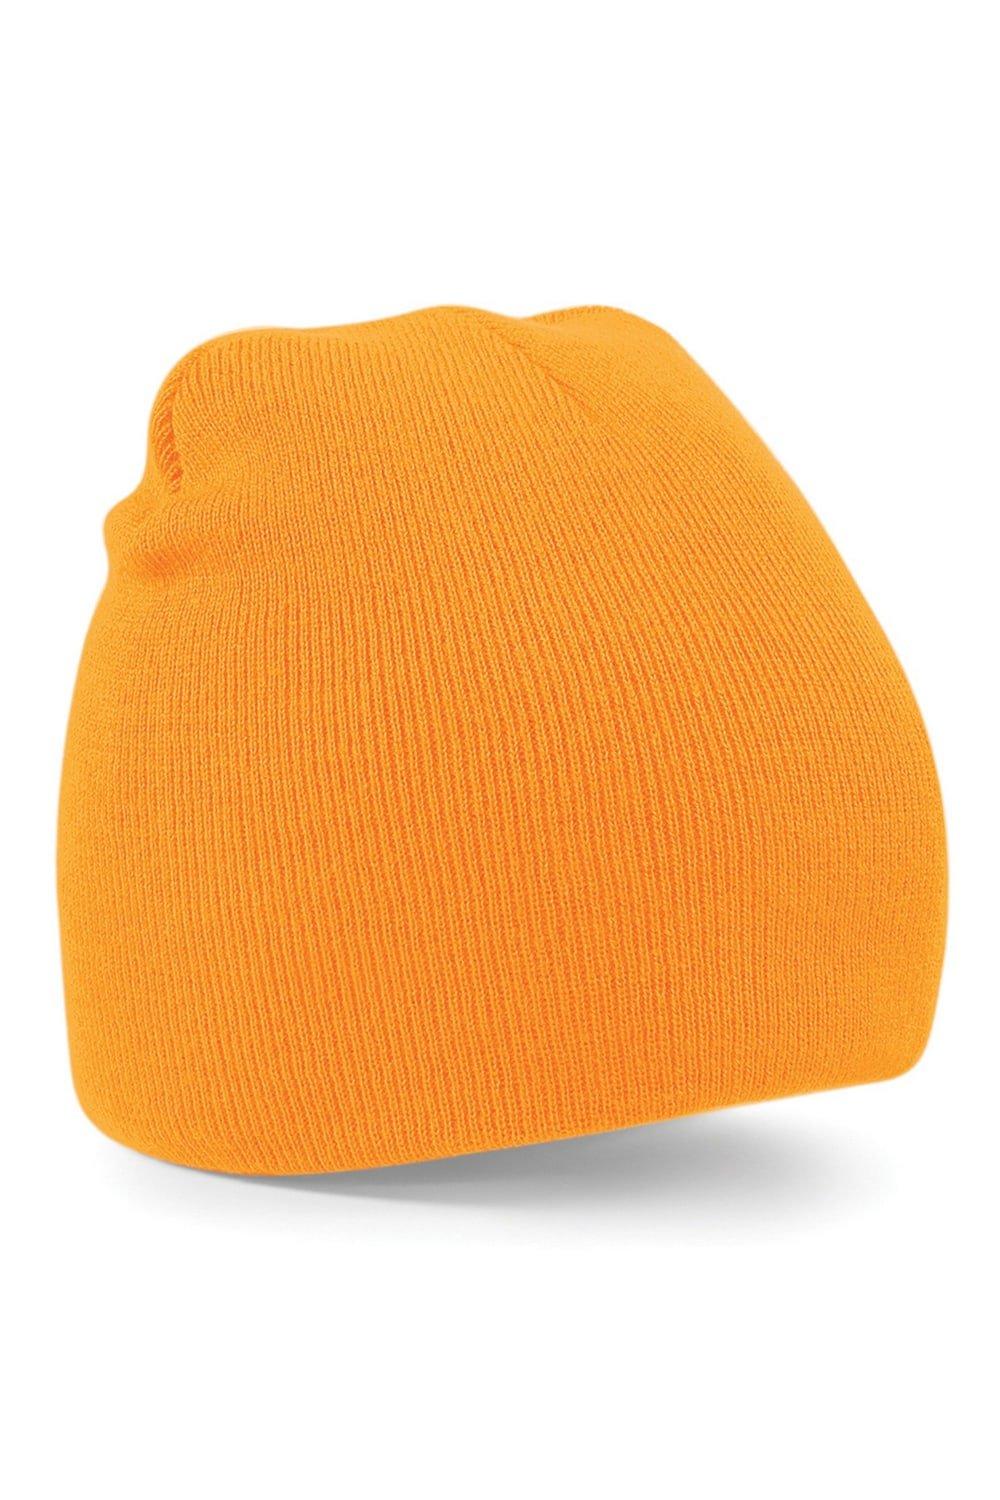 Простая базовая вязаная зимняя шапка-бини Beechfield, оранжевый